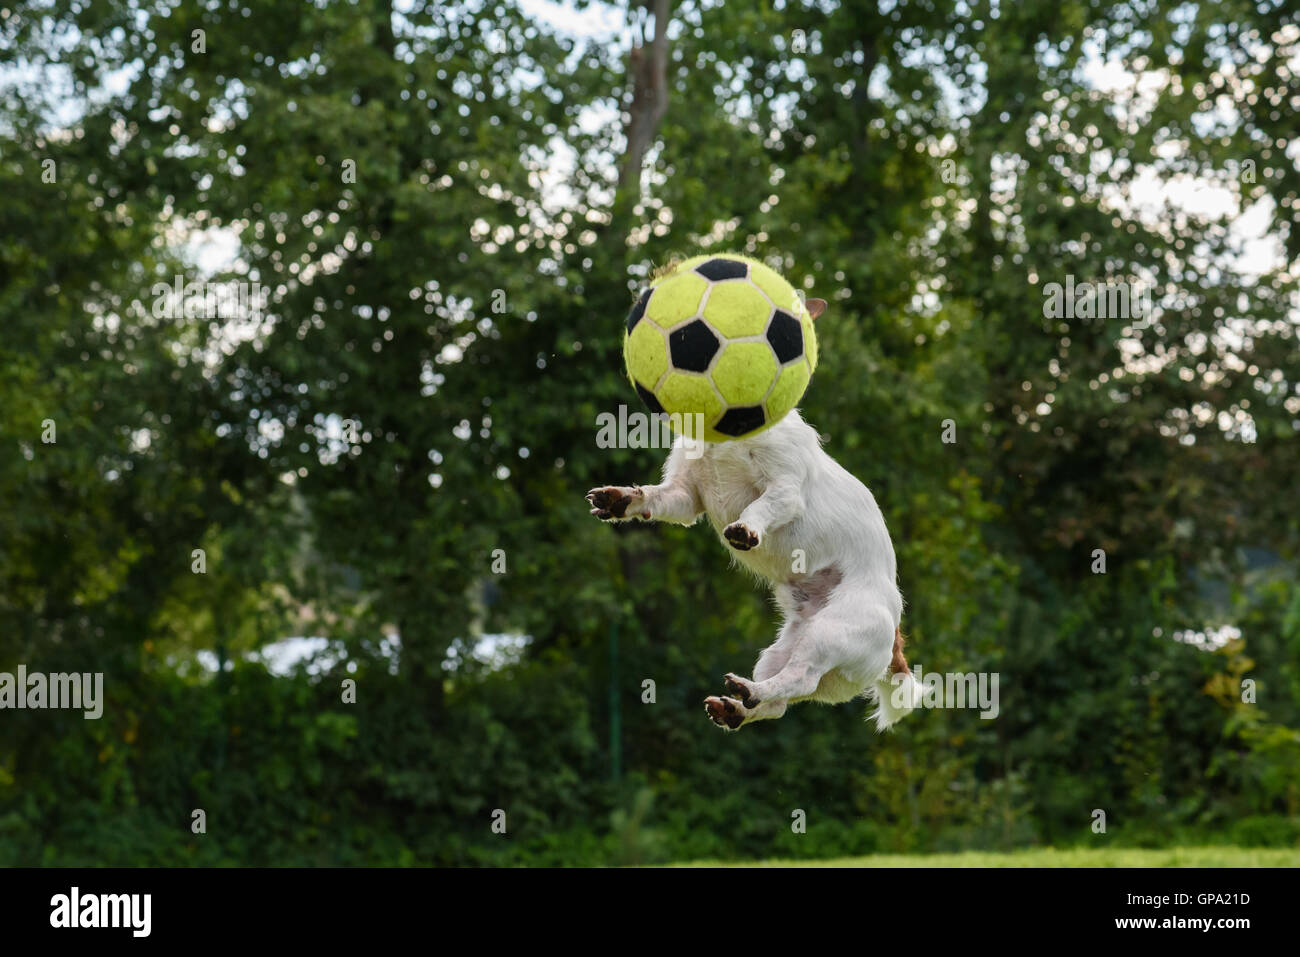 Vue avant du chien avec ballon de soccer au lieu de sauter la tête haute Banque D'Images